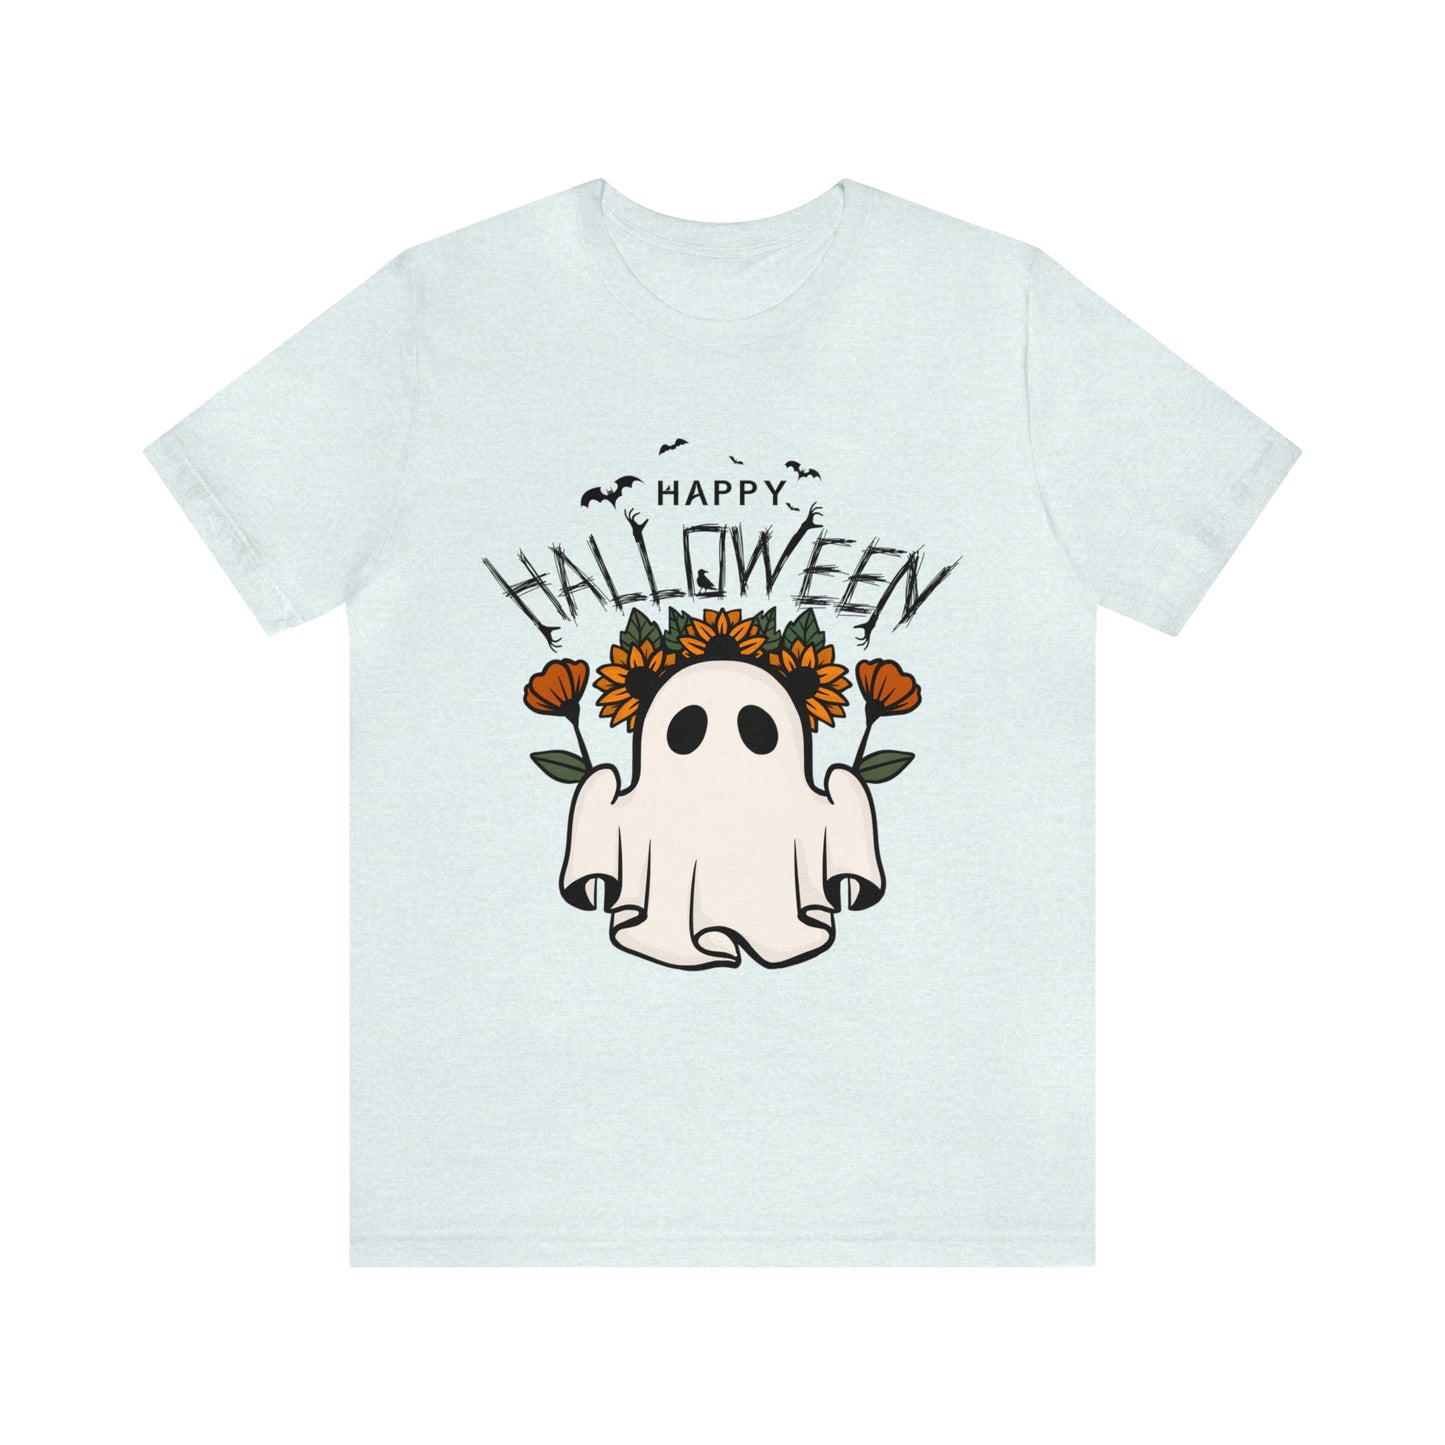 Unisex Jersey Short Sleeve Tee - Halloween - Little Ghost - 03